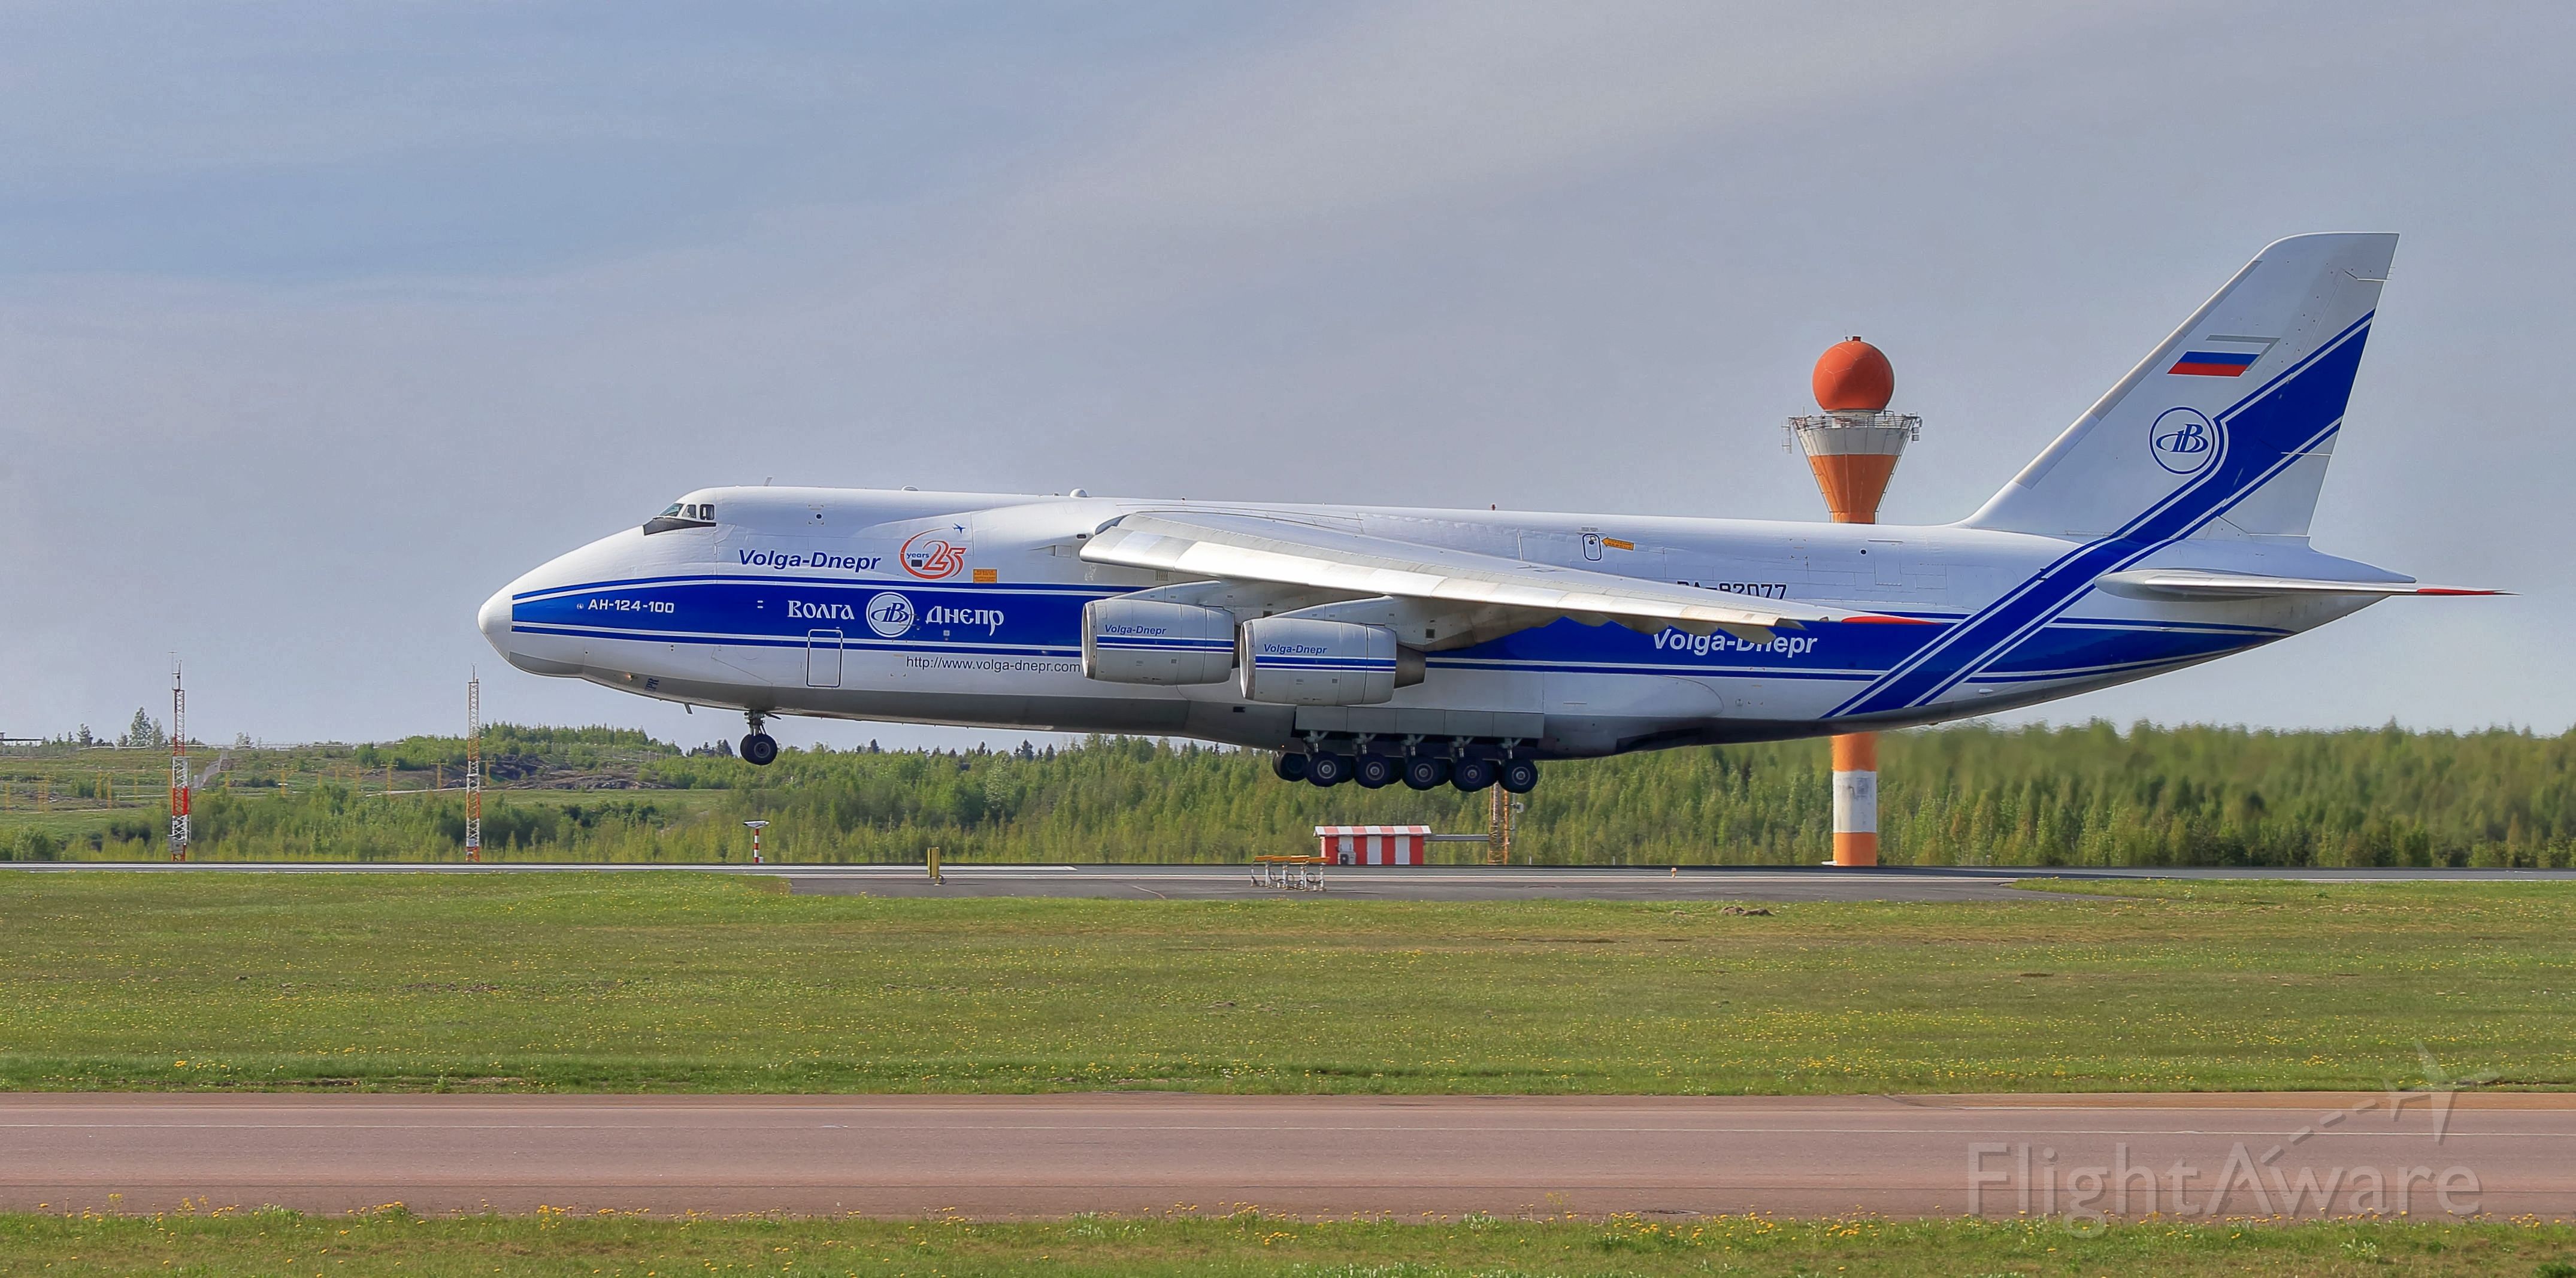 Antonov An-124 Ruslan (RA-82077)